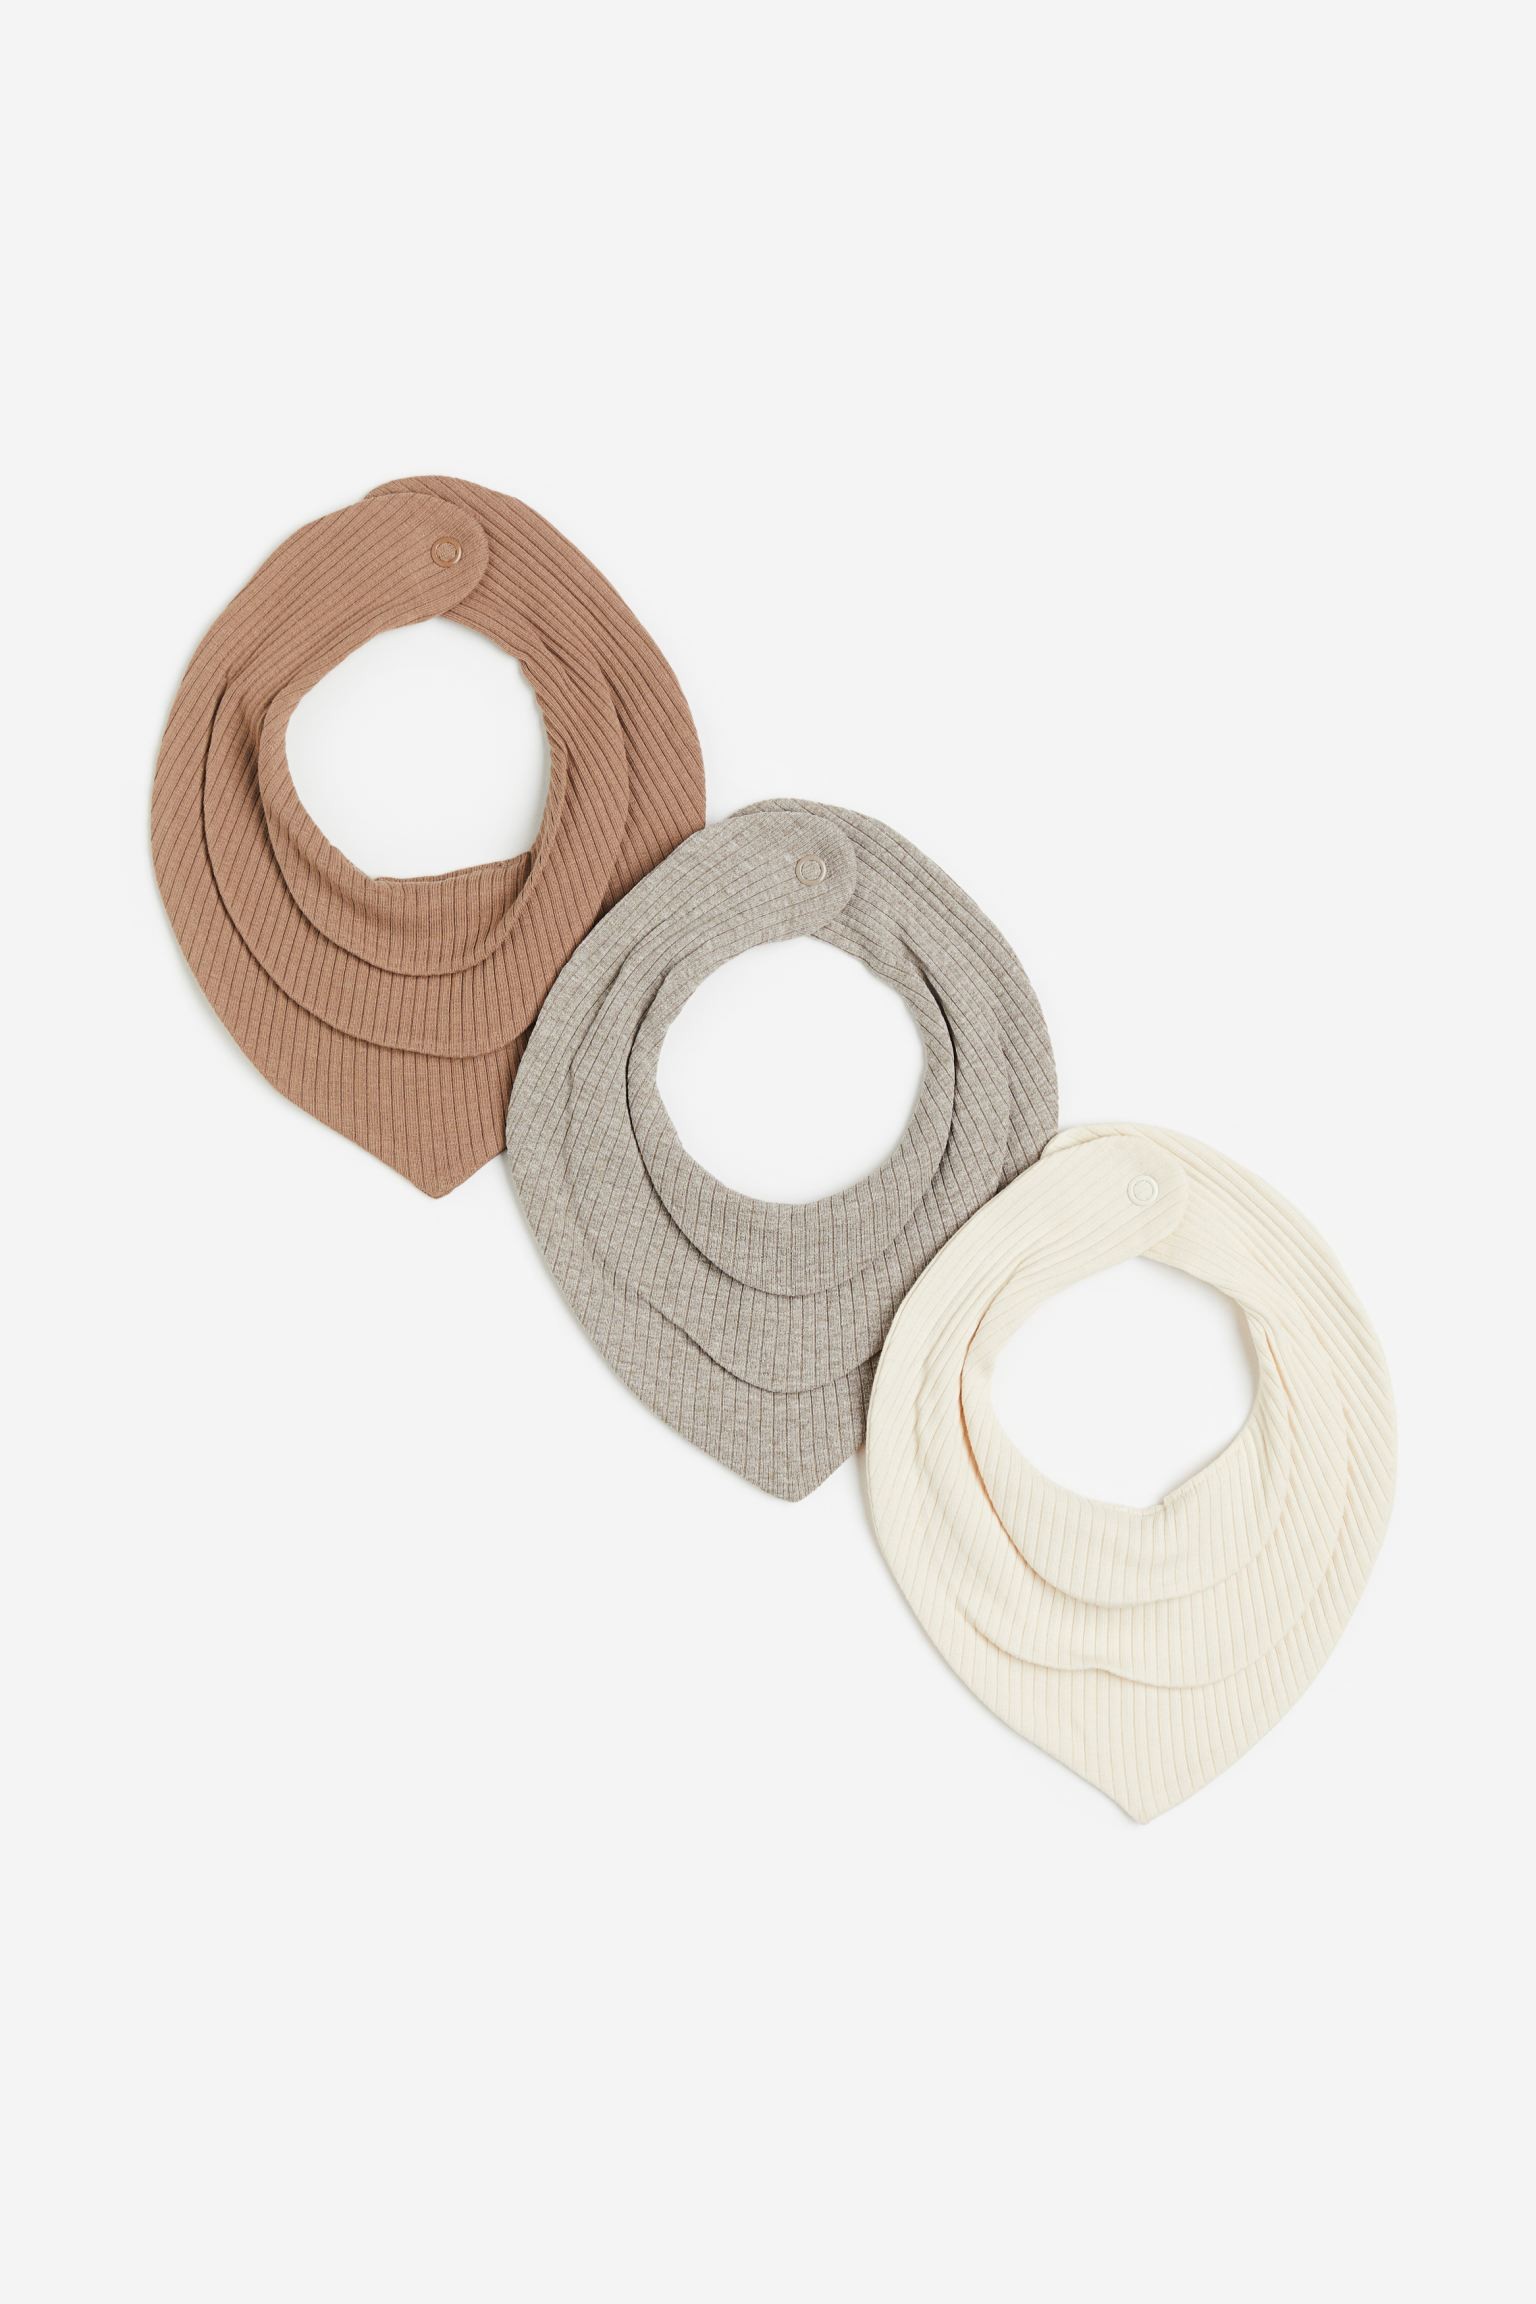 H&M Home Трикутний шарф у смужки, 3 шт., Натуральний білий/Сірий, 19x19 1176690003 1176690003